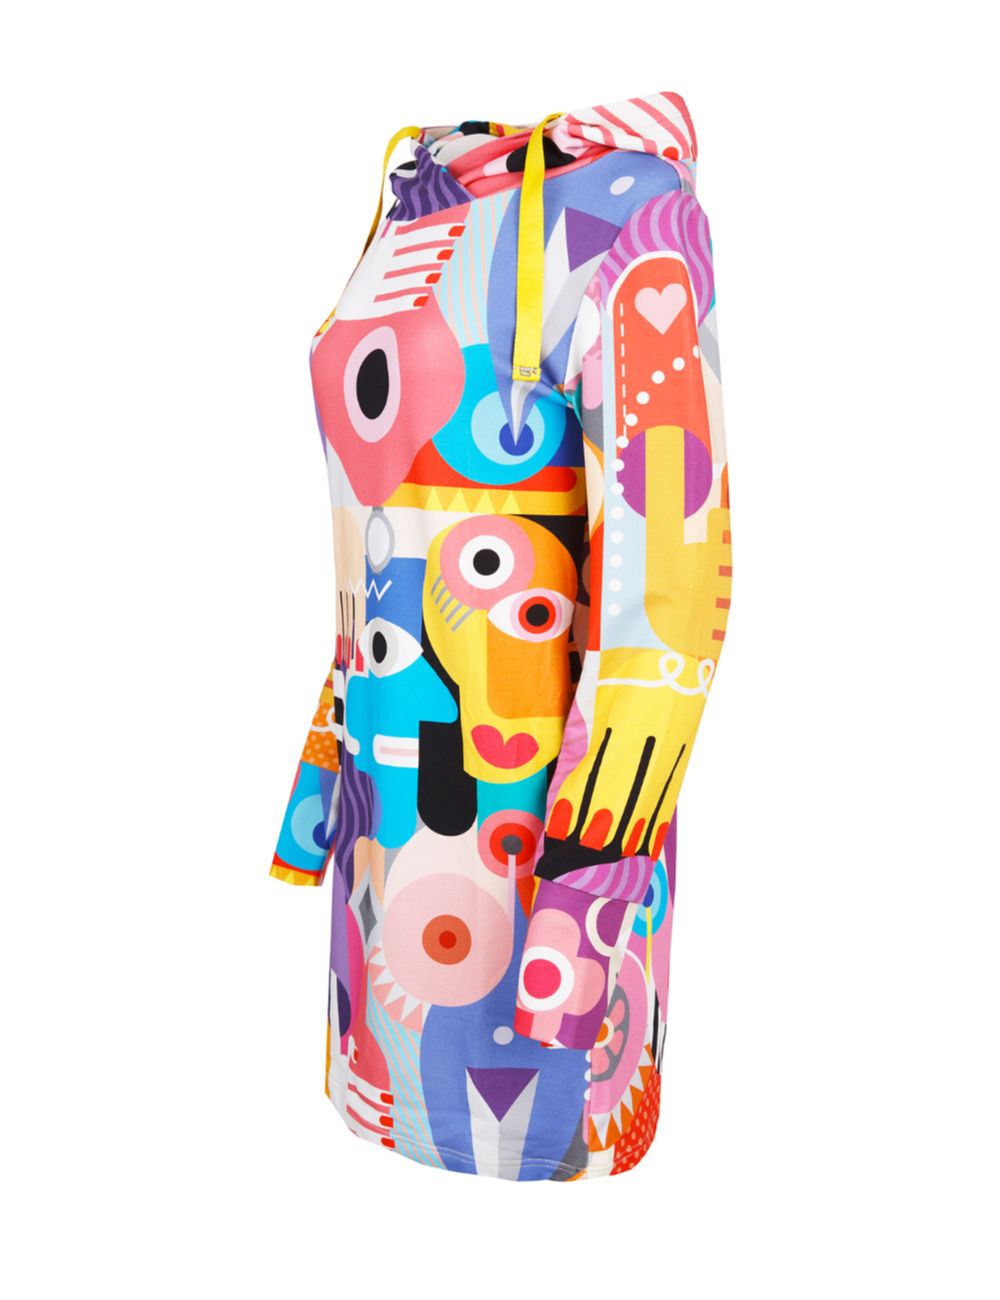 Sukienka z kapturem i długimi rękawami w kolorowy wzór kubistyczny.